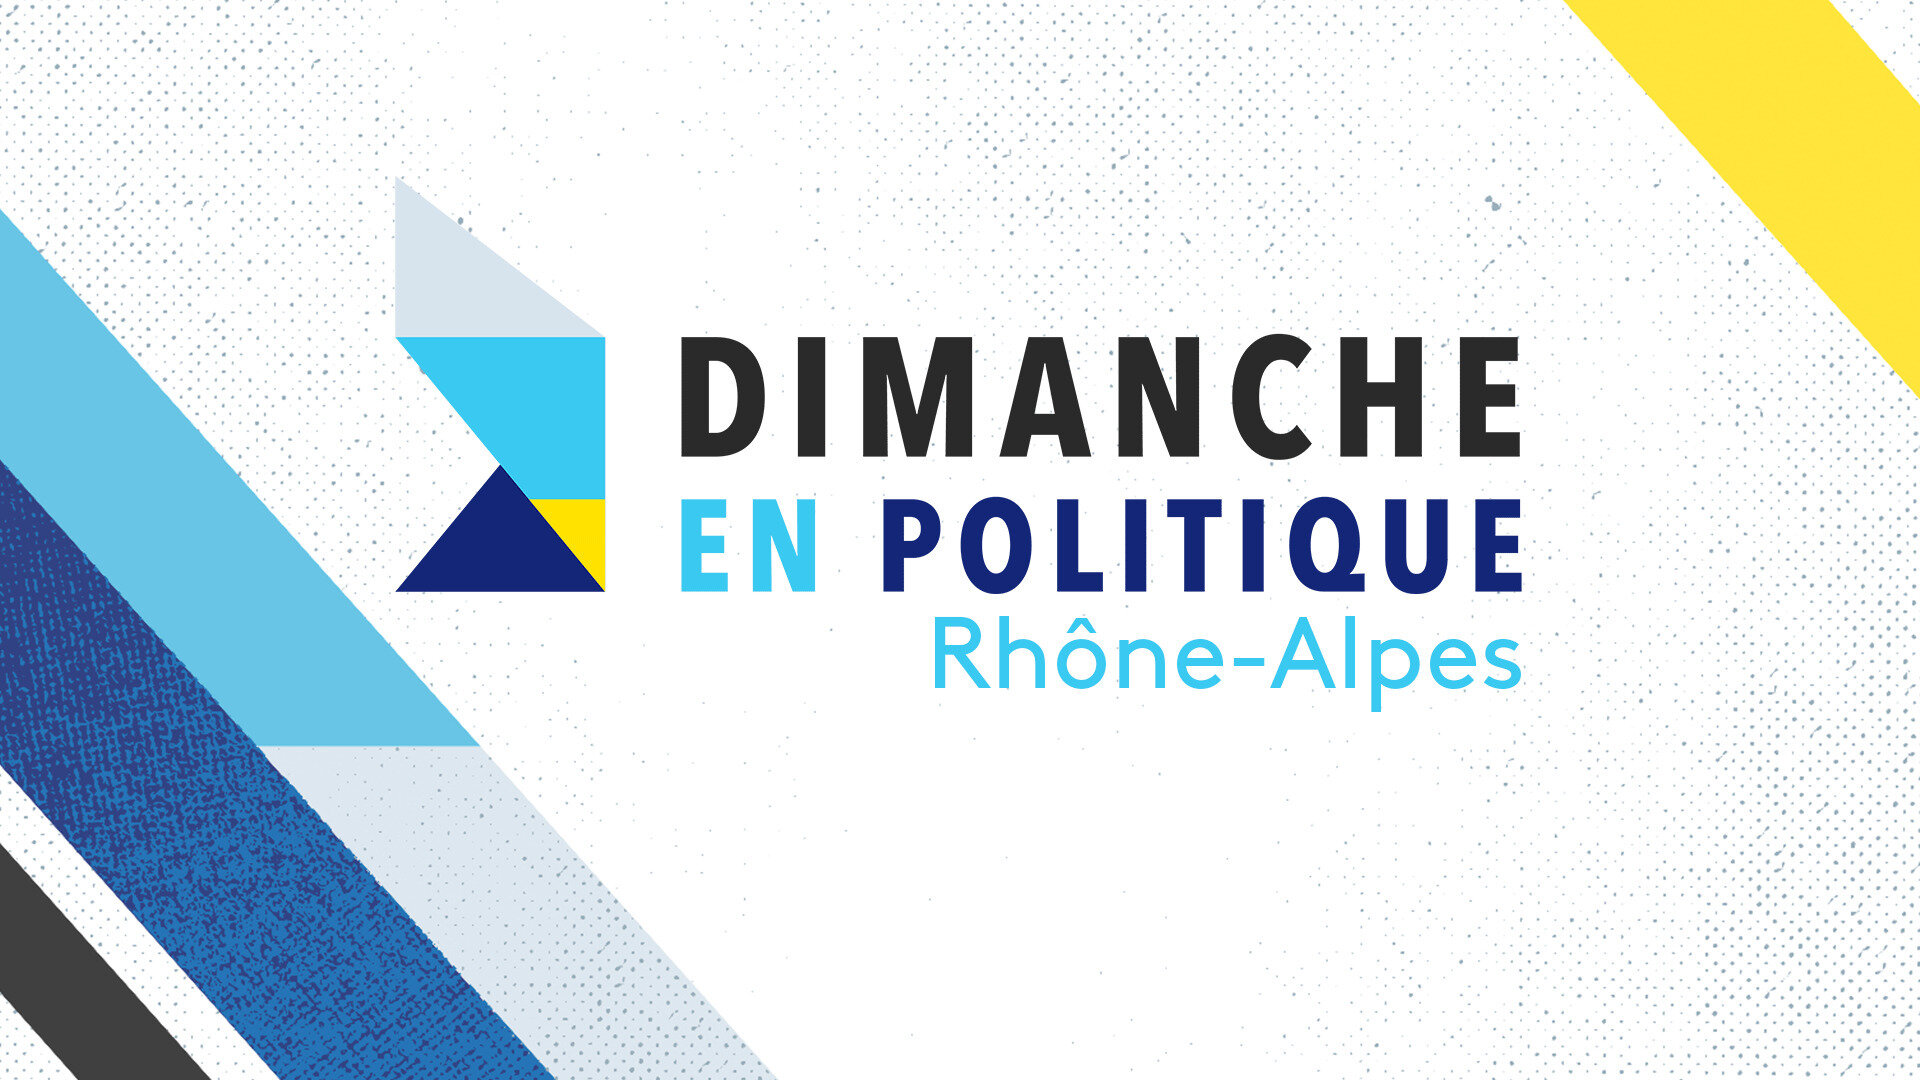 Dimanche en politique - Rhône Alpes : Spécial présidentielles "Les jeunes"